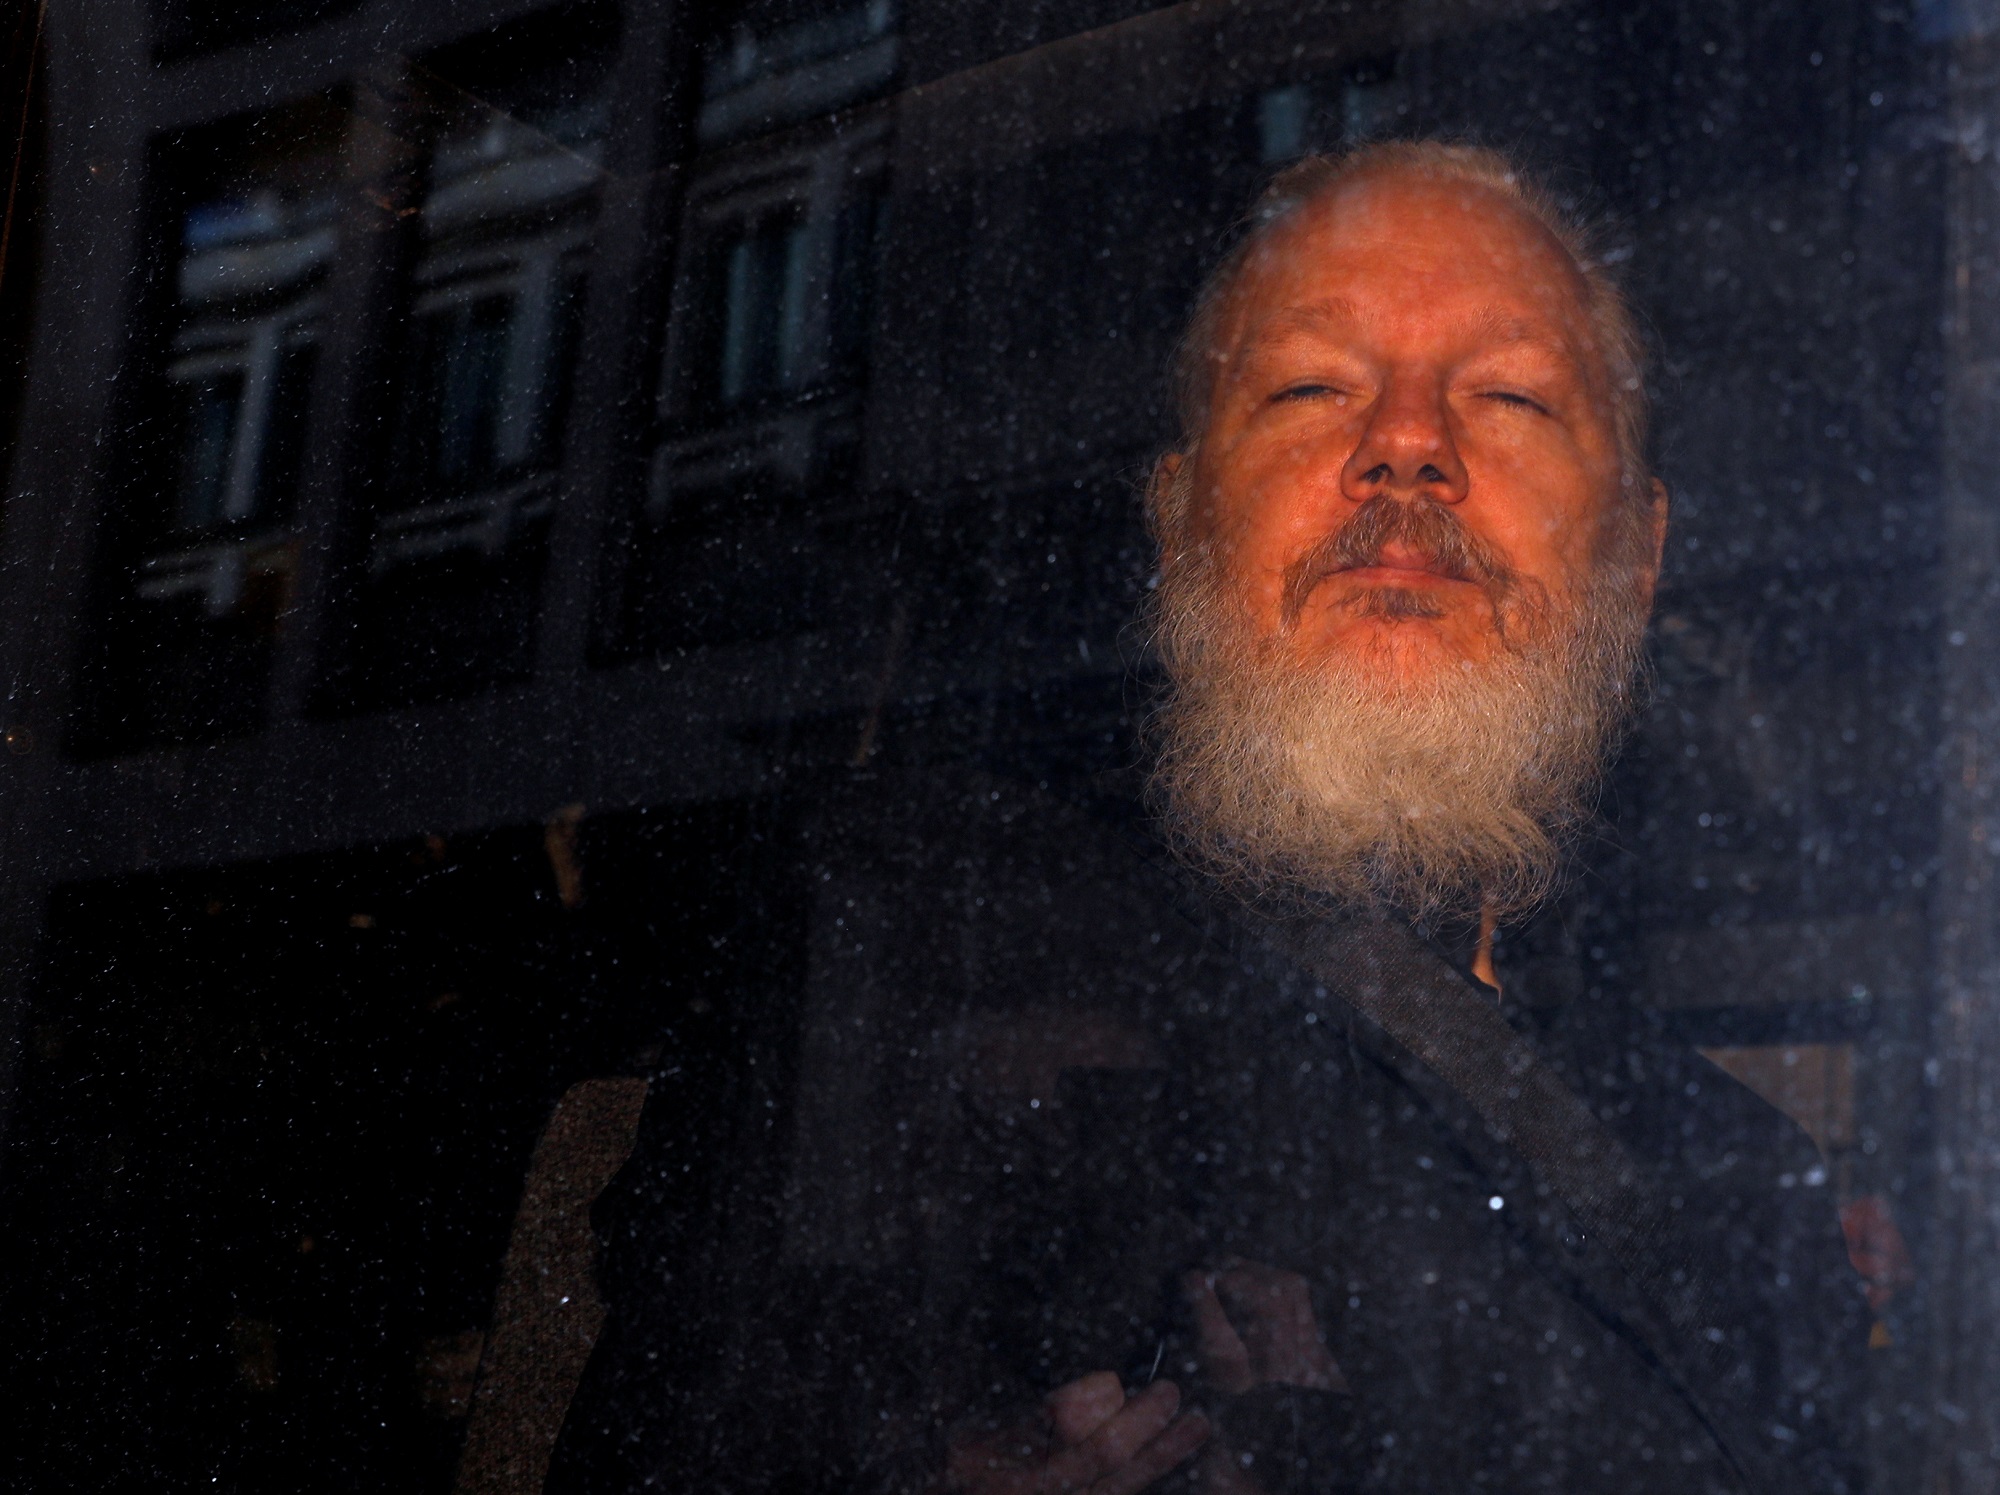 Alemania muestra su “preocupación” por el proceso de extradición de Assange a EEUU